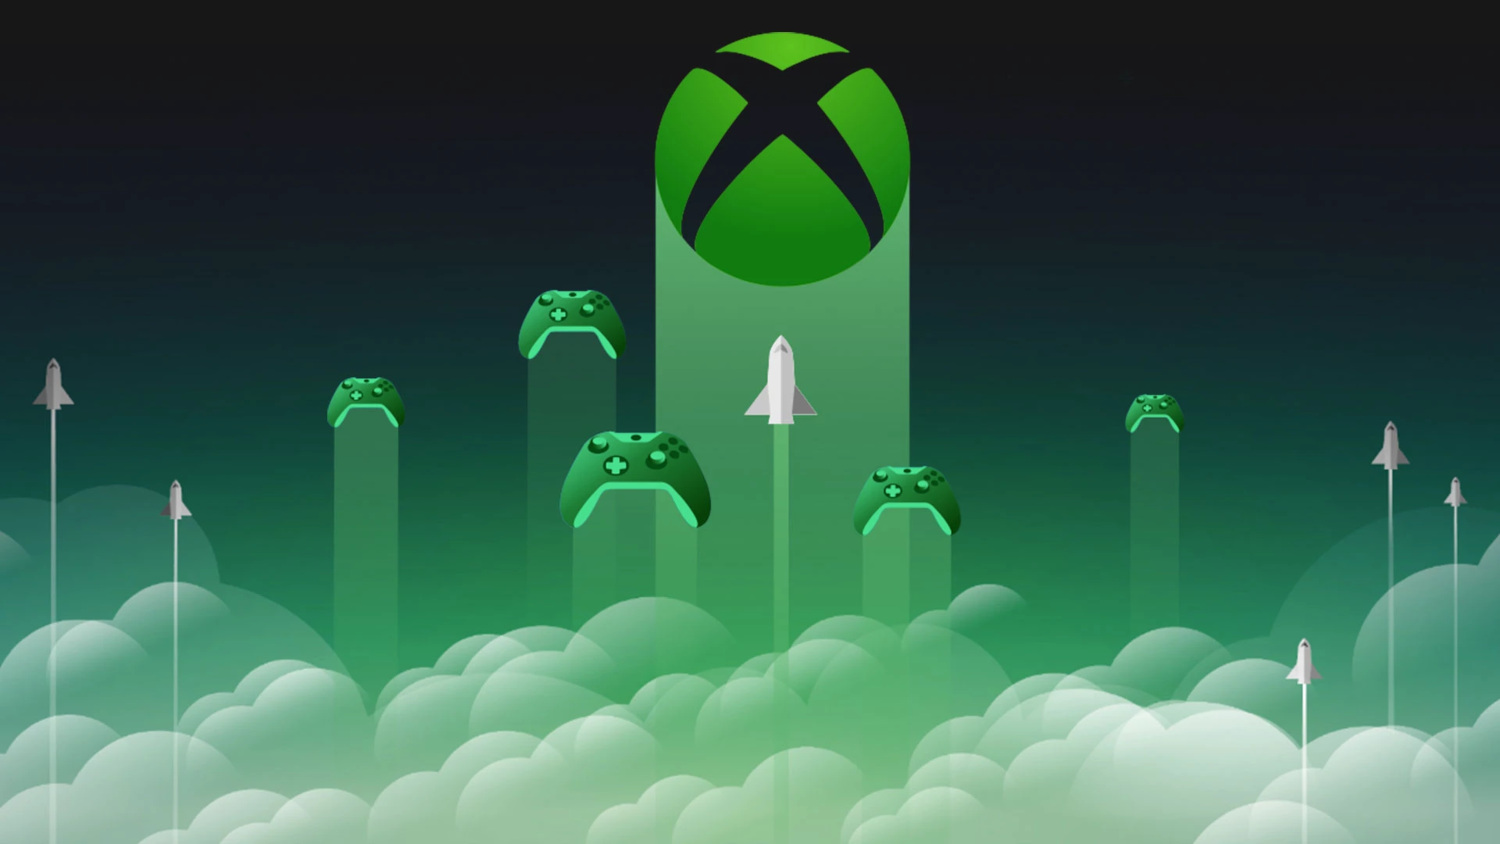 Microsoft passa direitos de cloud gaming dos jogos da Activision à